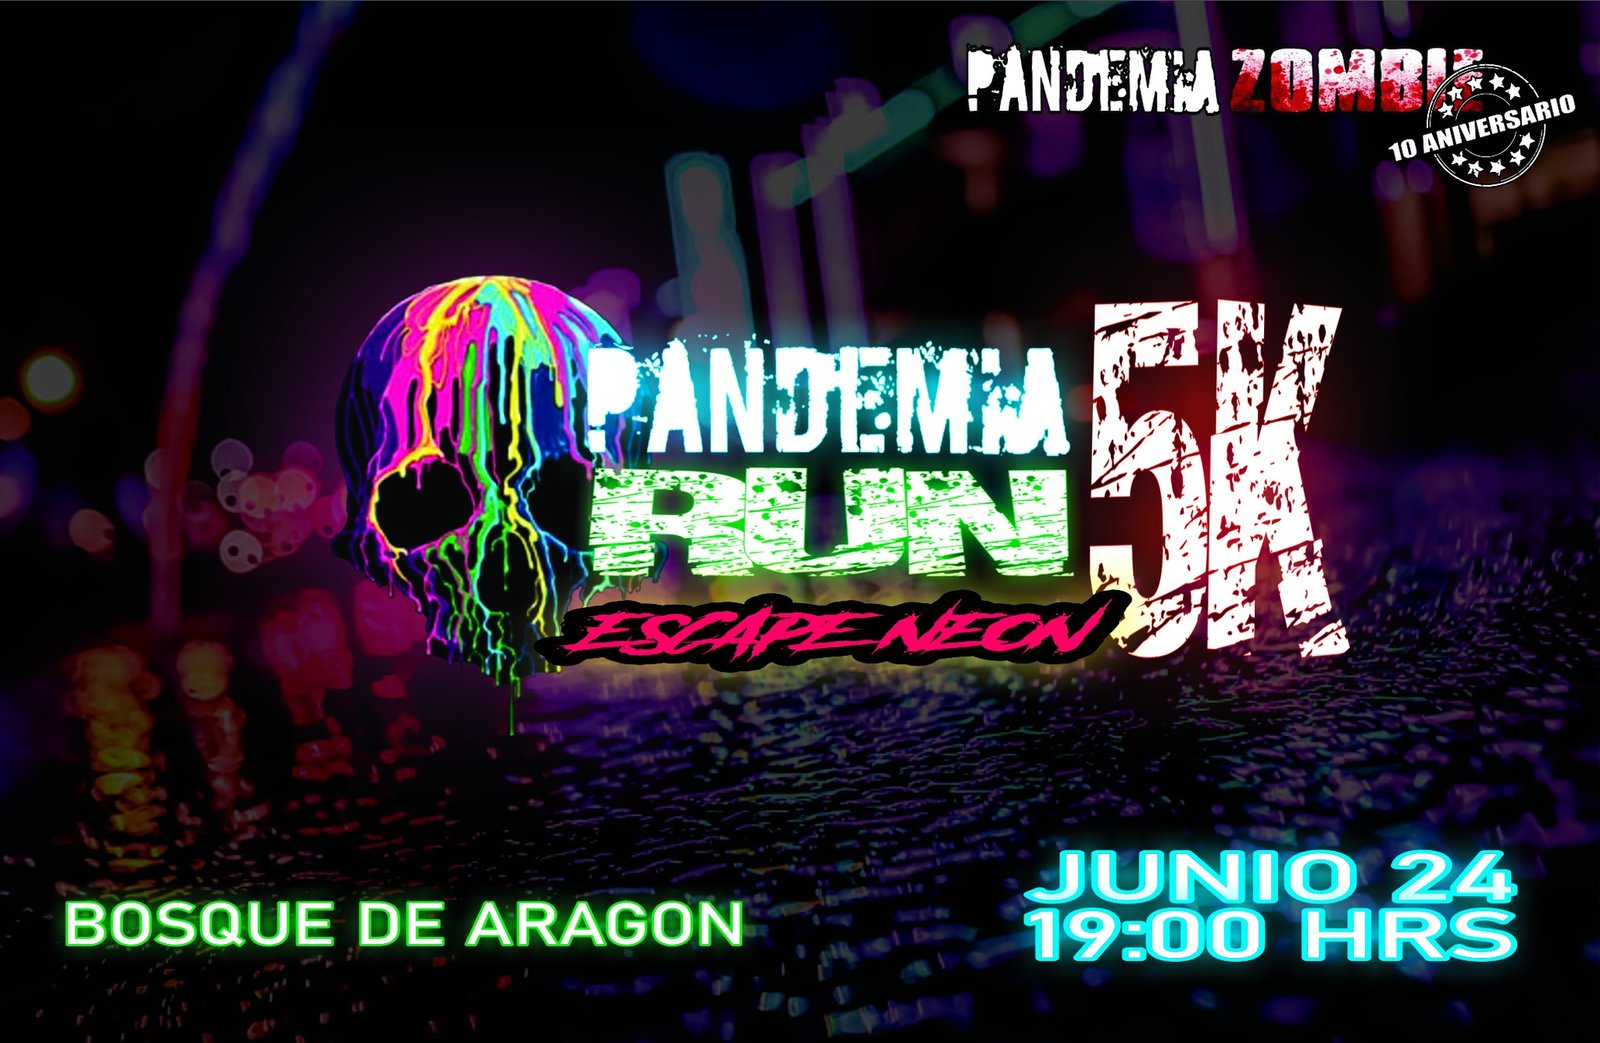 Pandemia Run 5K "Escape Neón"